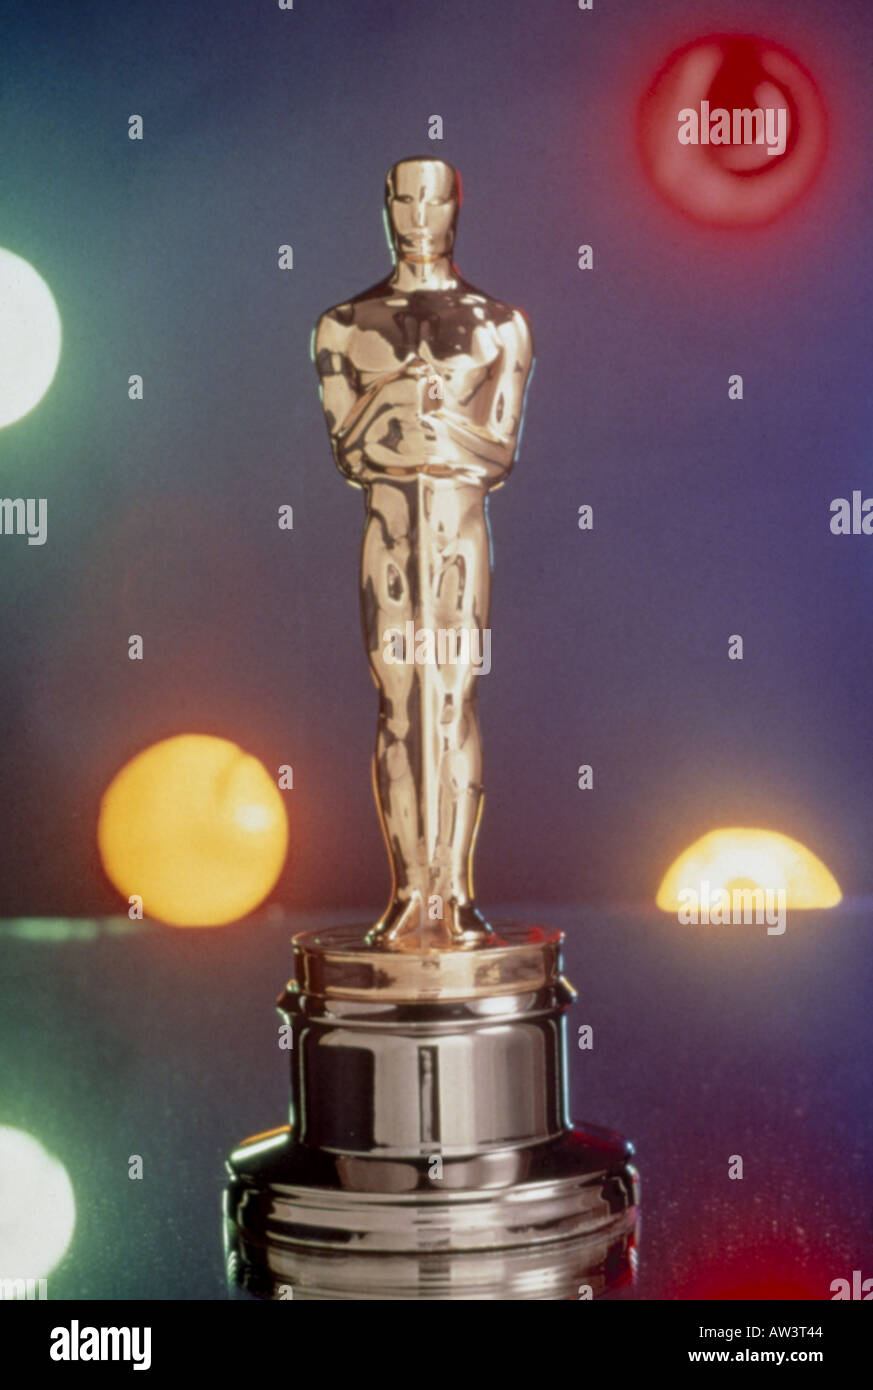 OSCAR statuetta famoso film Award dalla American Academy of Motion Picture Arts and Sciences - vedere la descrizione riportata di seguito Foto Stock